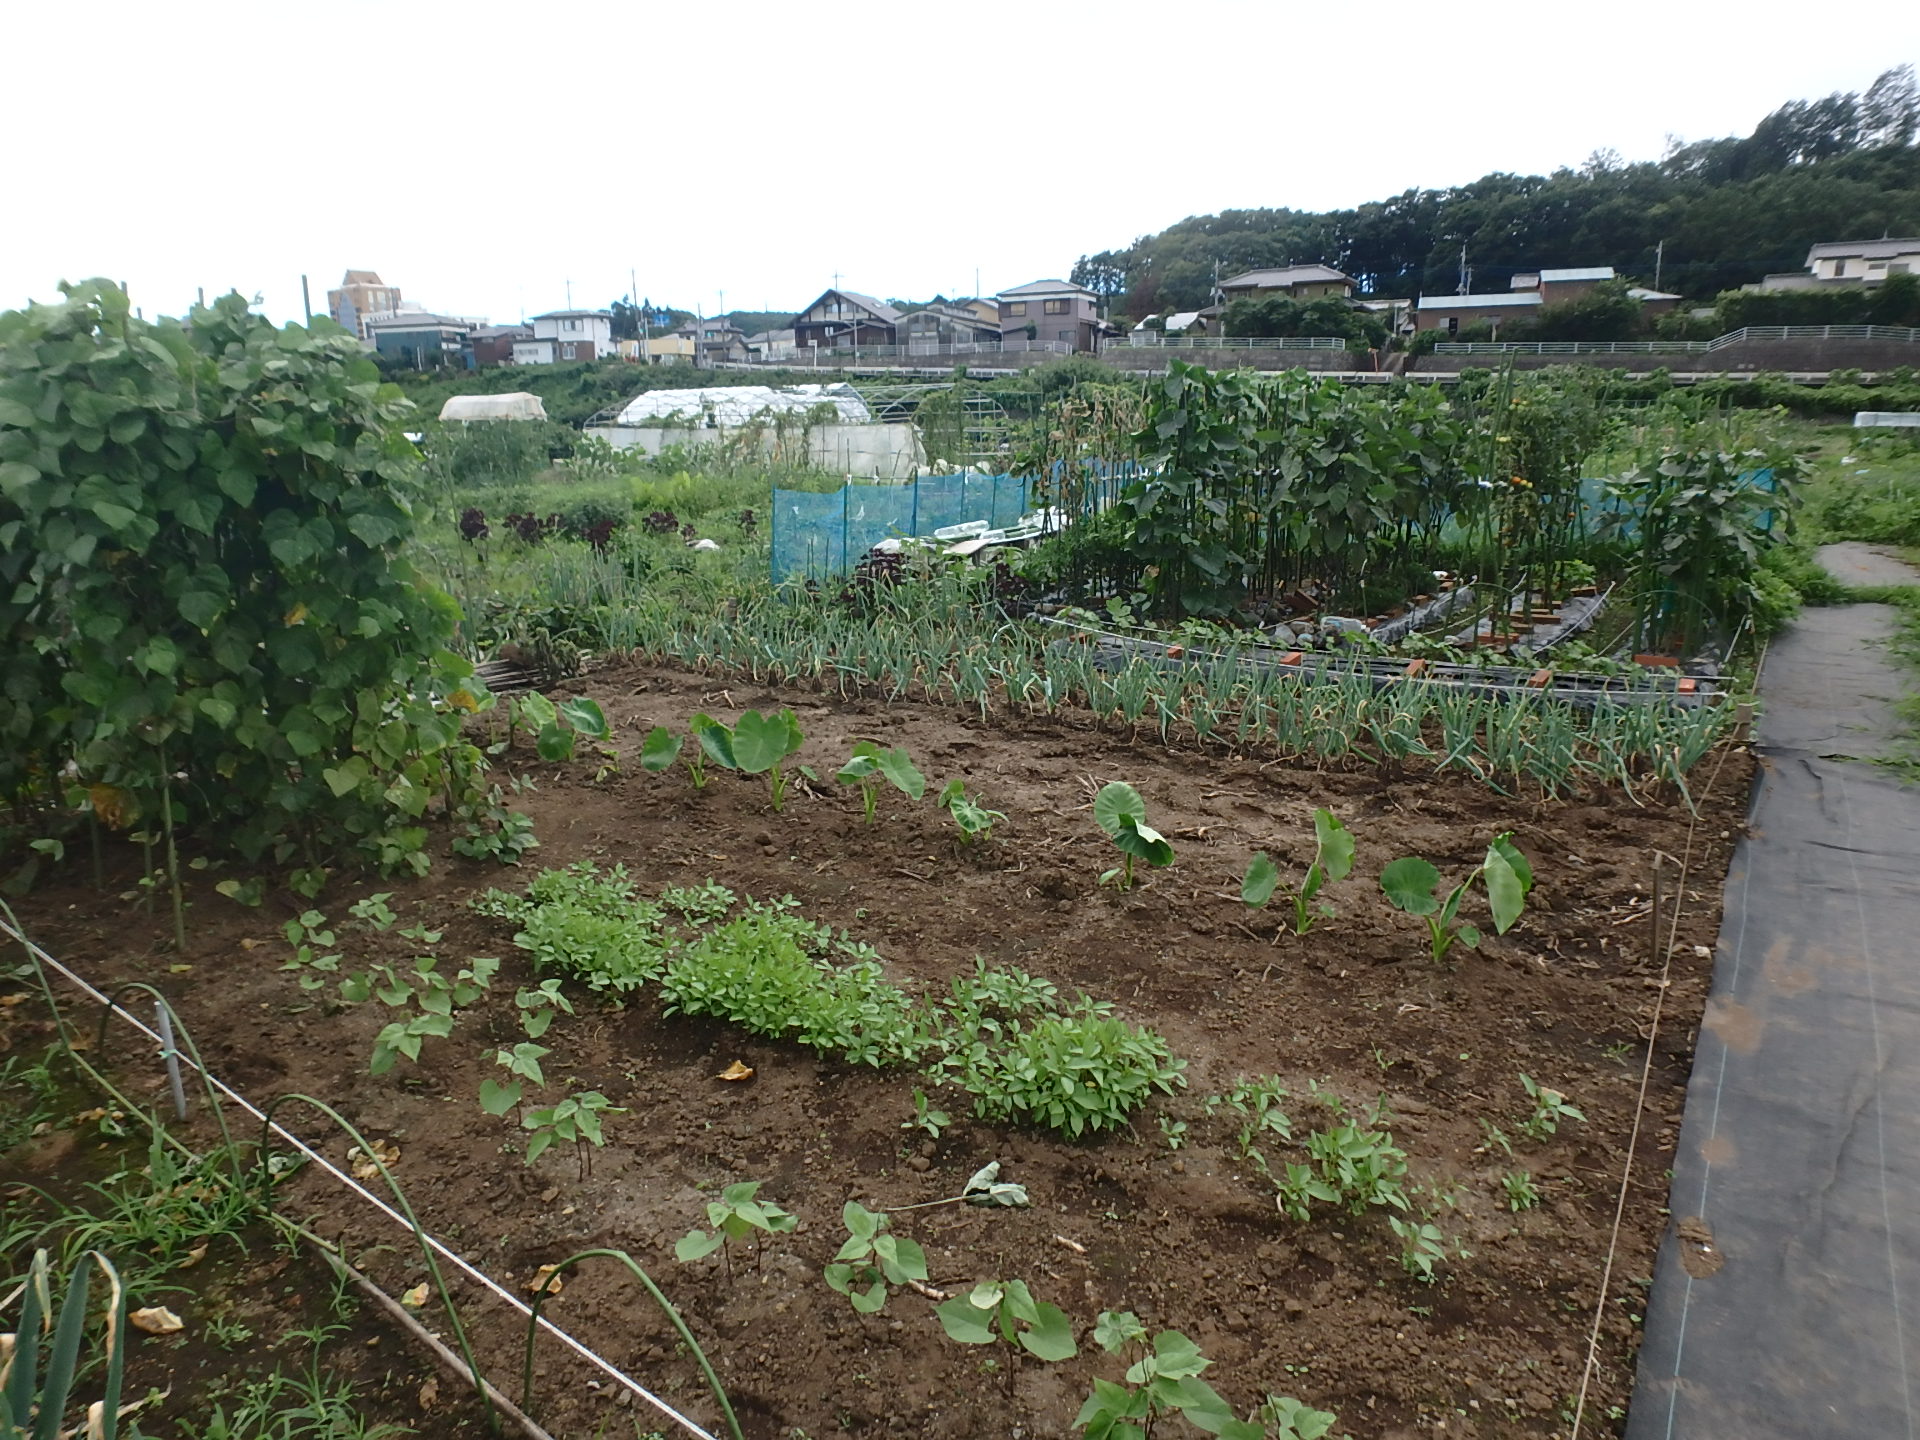 青々とした野菜が植えられている阿須農場の写真